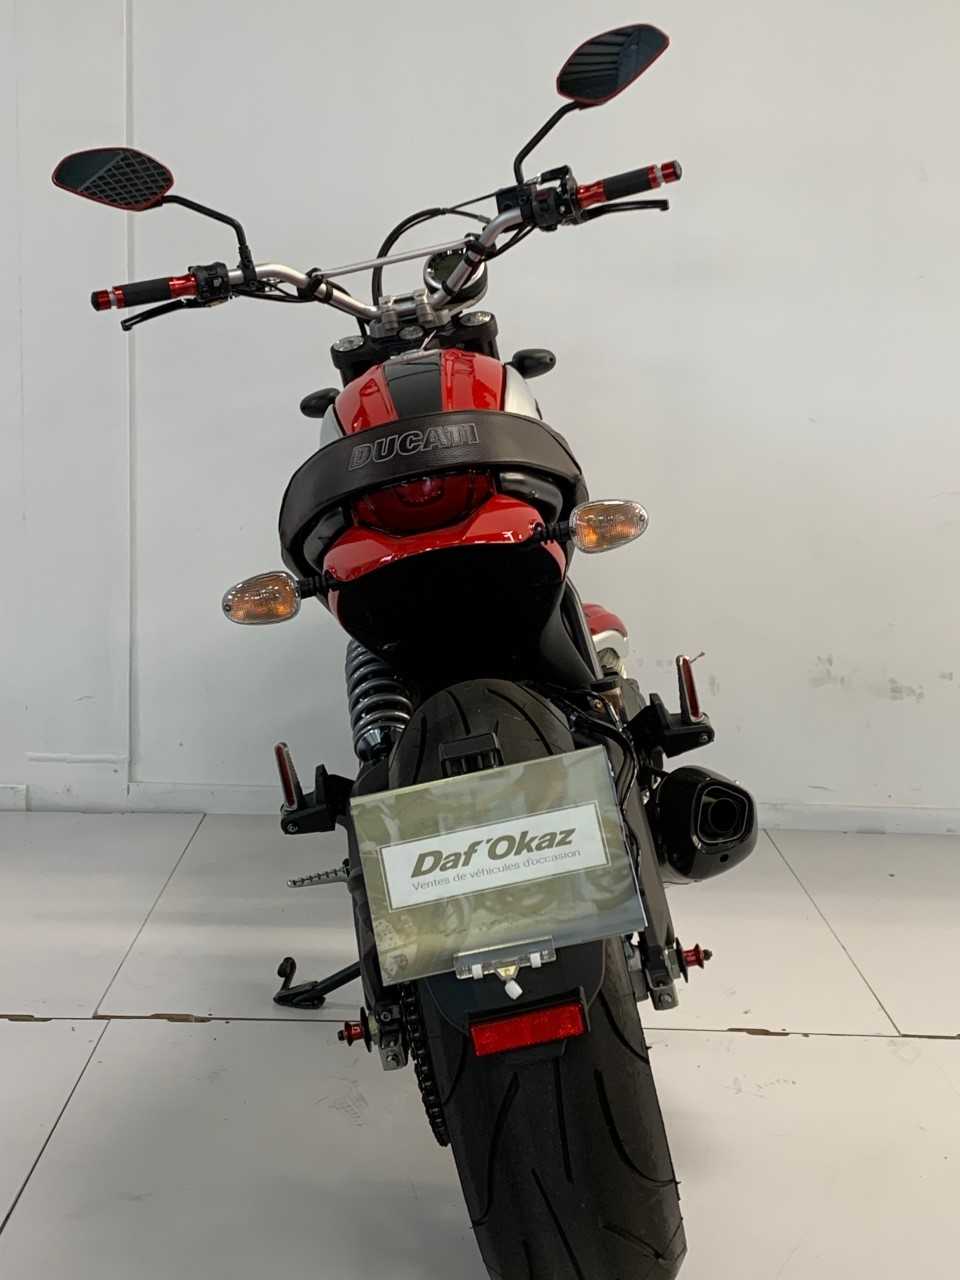 Ducati 800 Scrambler Classic 2016 HD vue arrière